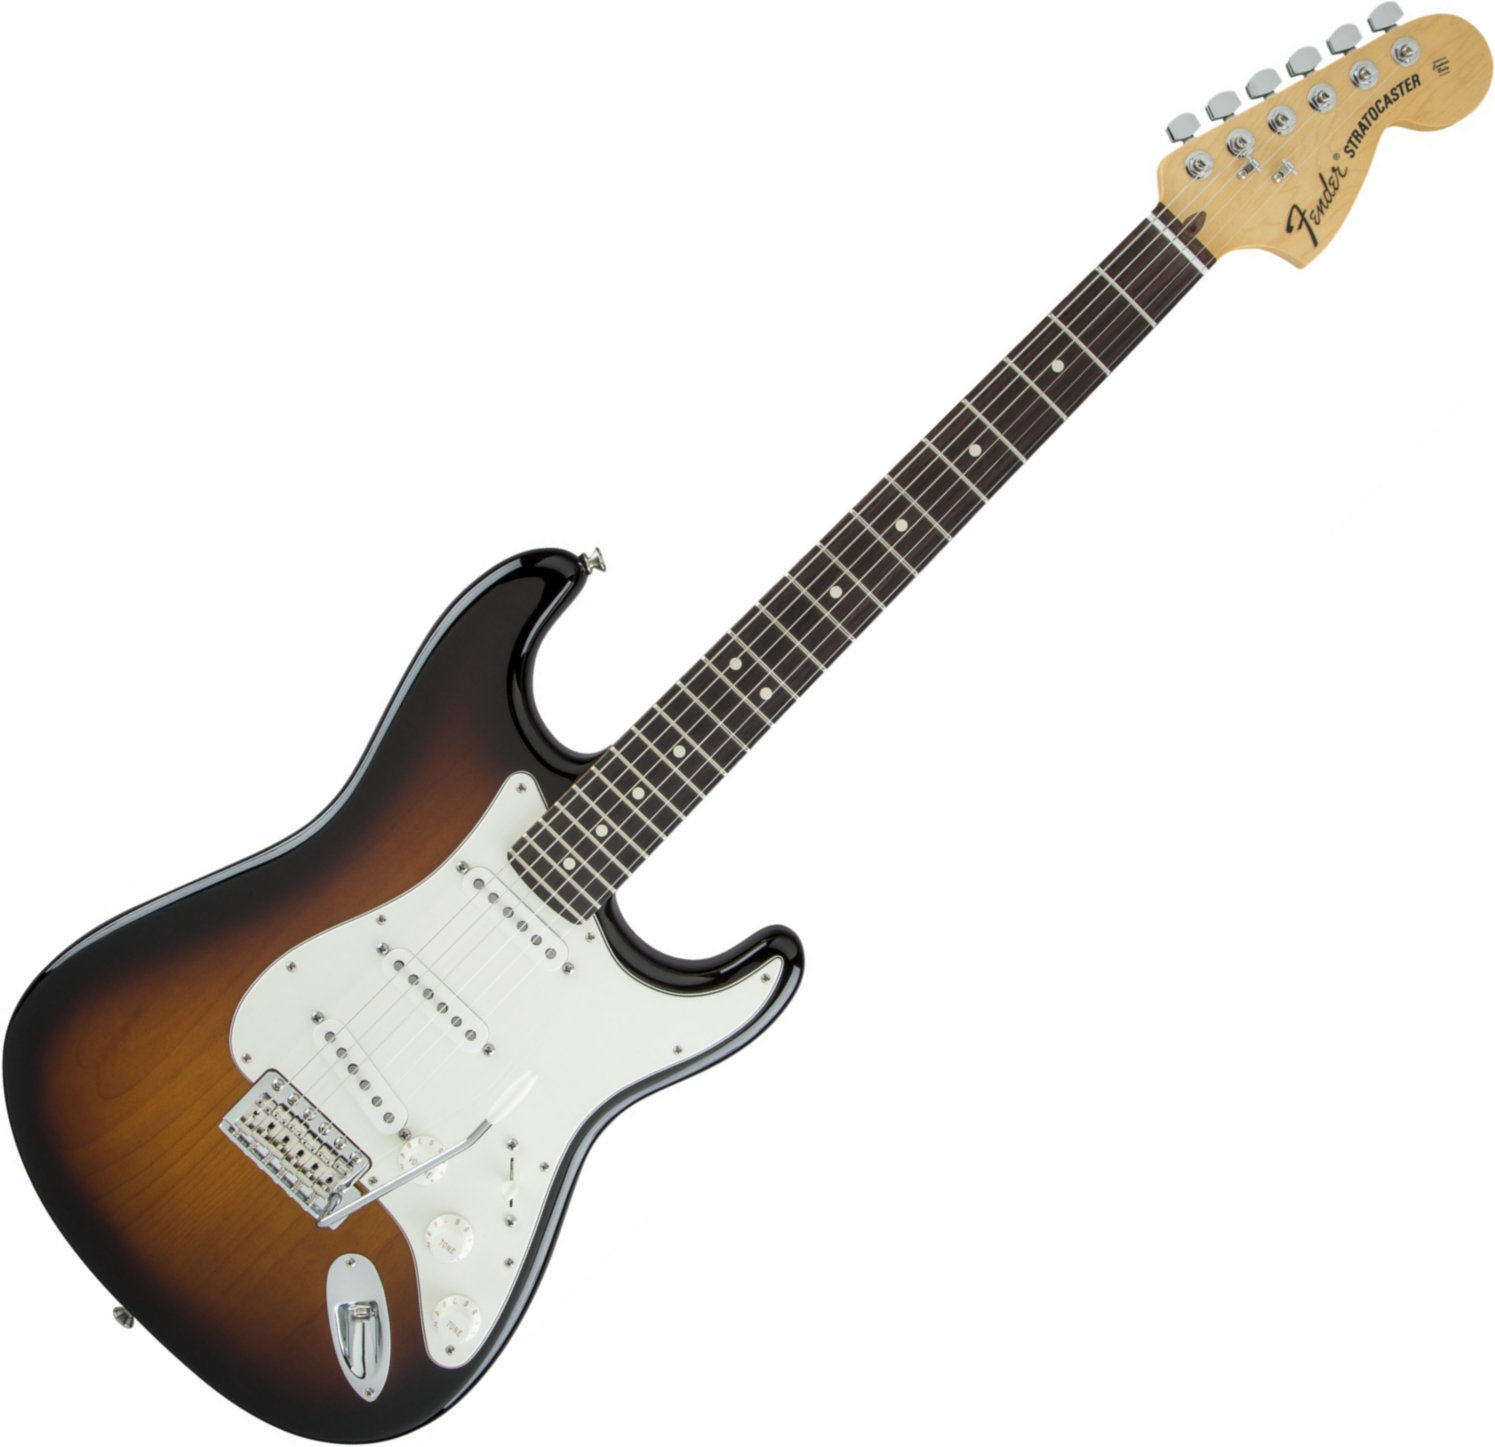 Sähkökitara Fender American Special Stratocaster RW 2-Color Sunburst